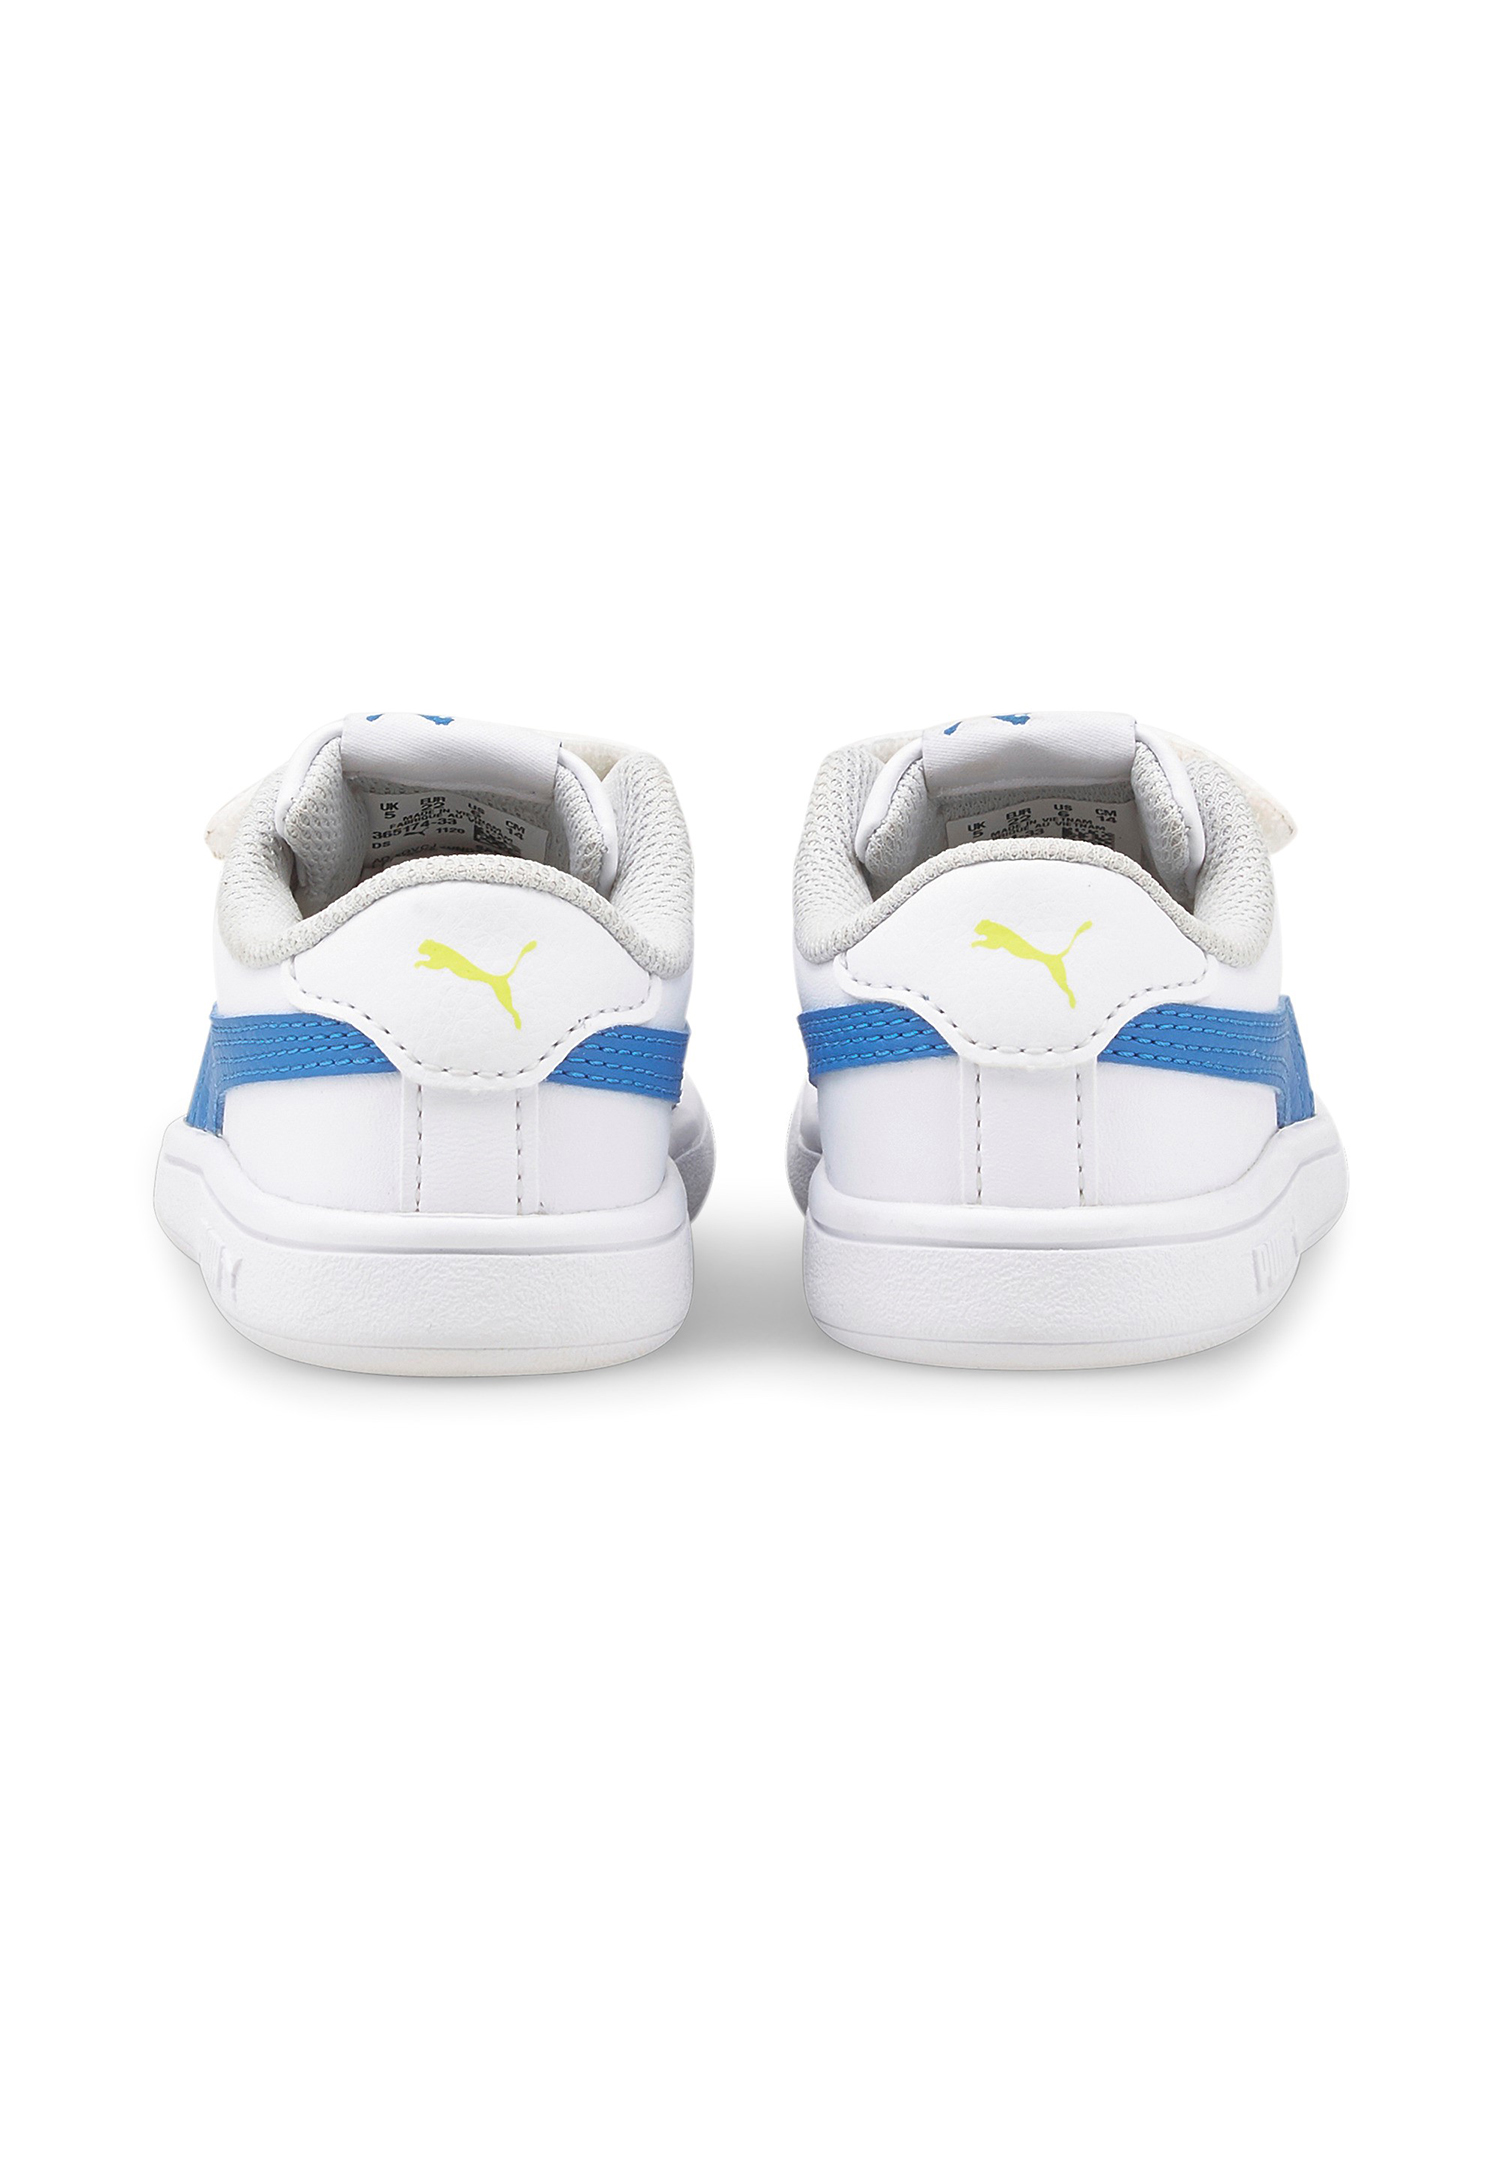 PUMA Smash v2 L V INF Kids Sneaker Schuhe weiss 365174 33